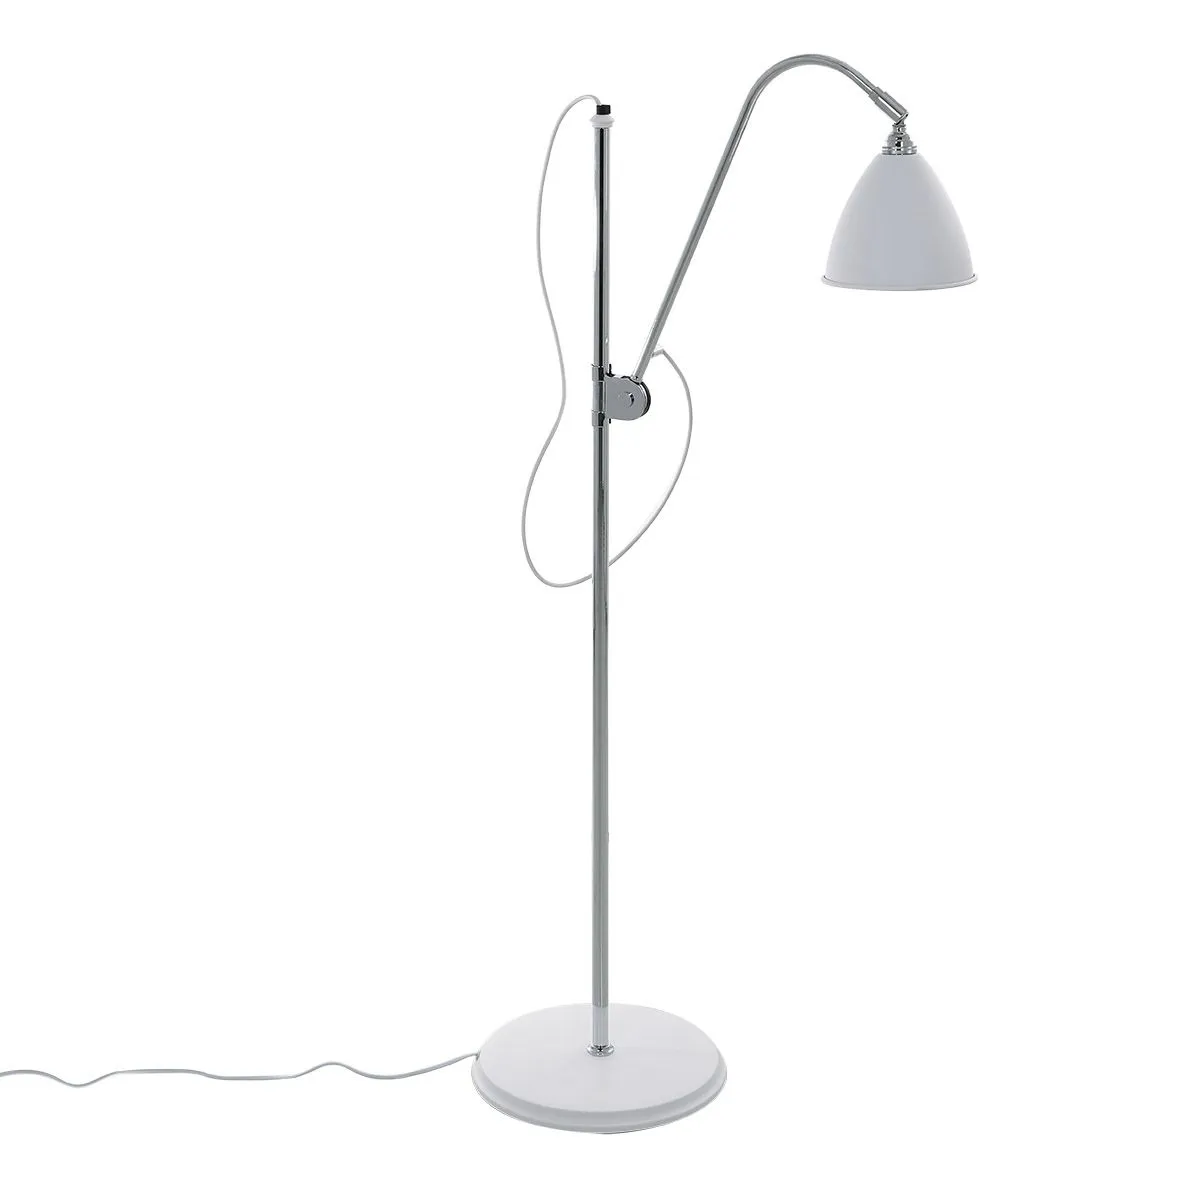 Evato, klasyczna lampa stojąca, podłogowa, biała, E14, MLE3052/1C-WH